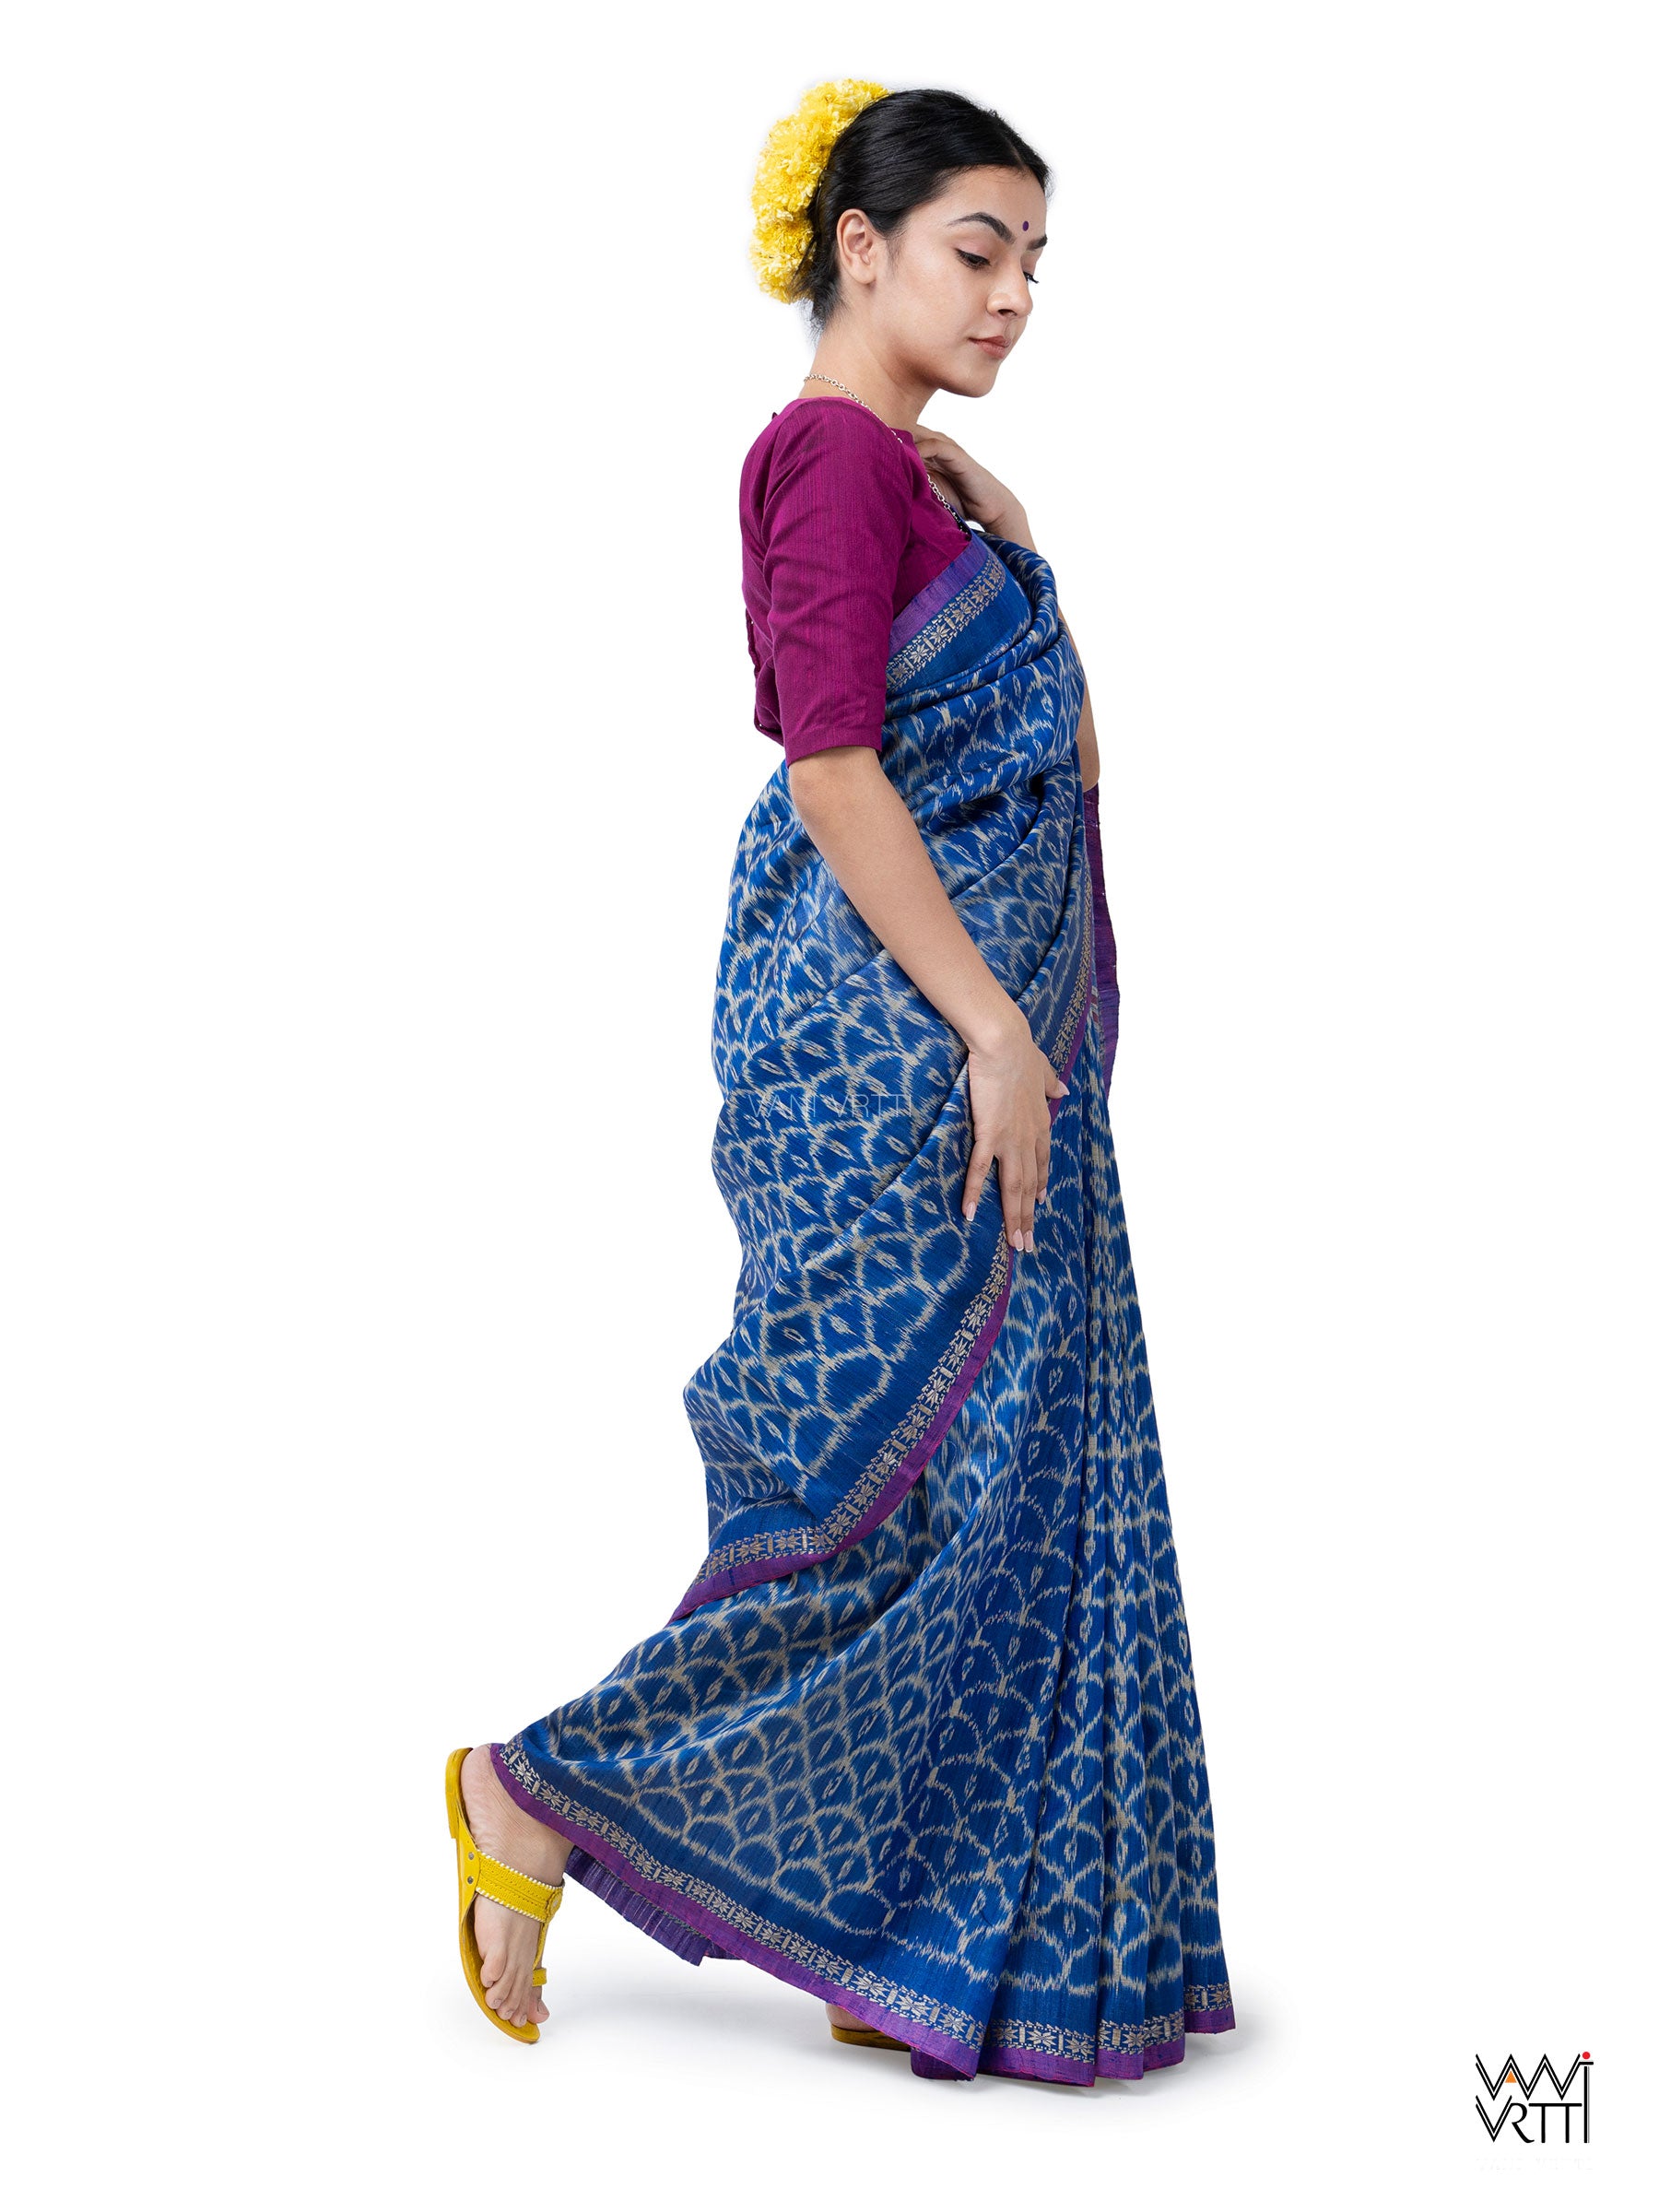 Royal Blue Samudra Lahar Ikat Handspun Tussar Silk Saree